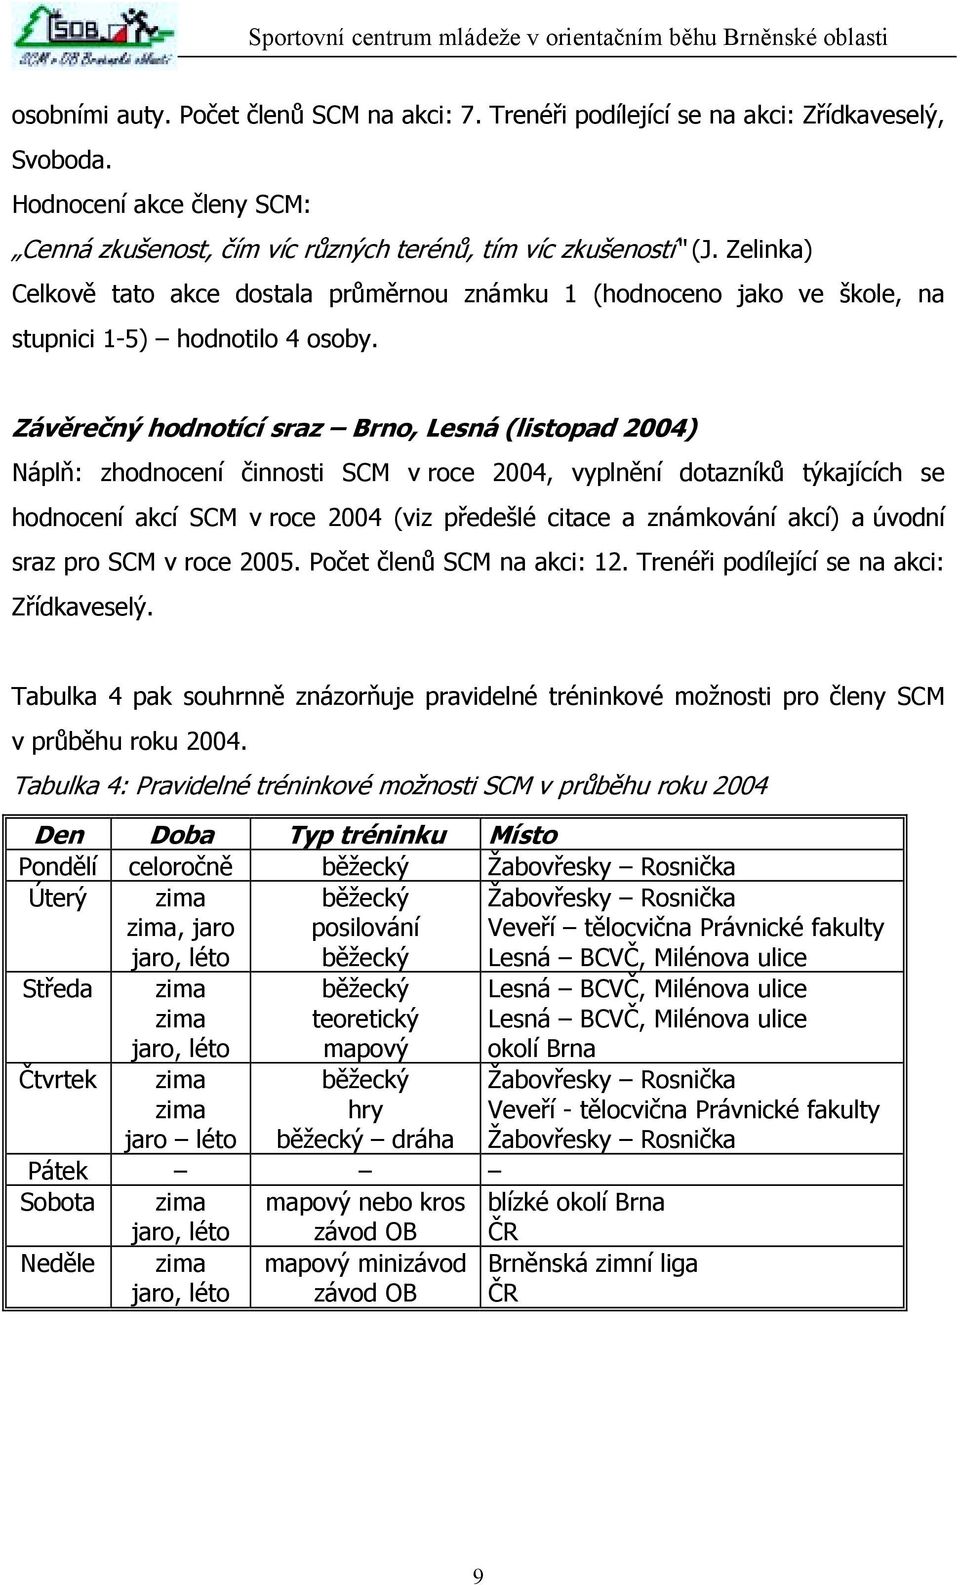 Závěrečný hodnotící sraz Brno, Lesná (listopad 2004) Náplň: zhodnocení činnosti SCM v roce 2004, vyplnění dotazníků týkajících se hodnocení akcí SCM v roce 2004 (viz předešlé citace a známkování